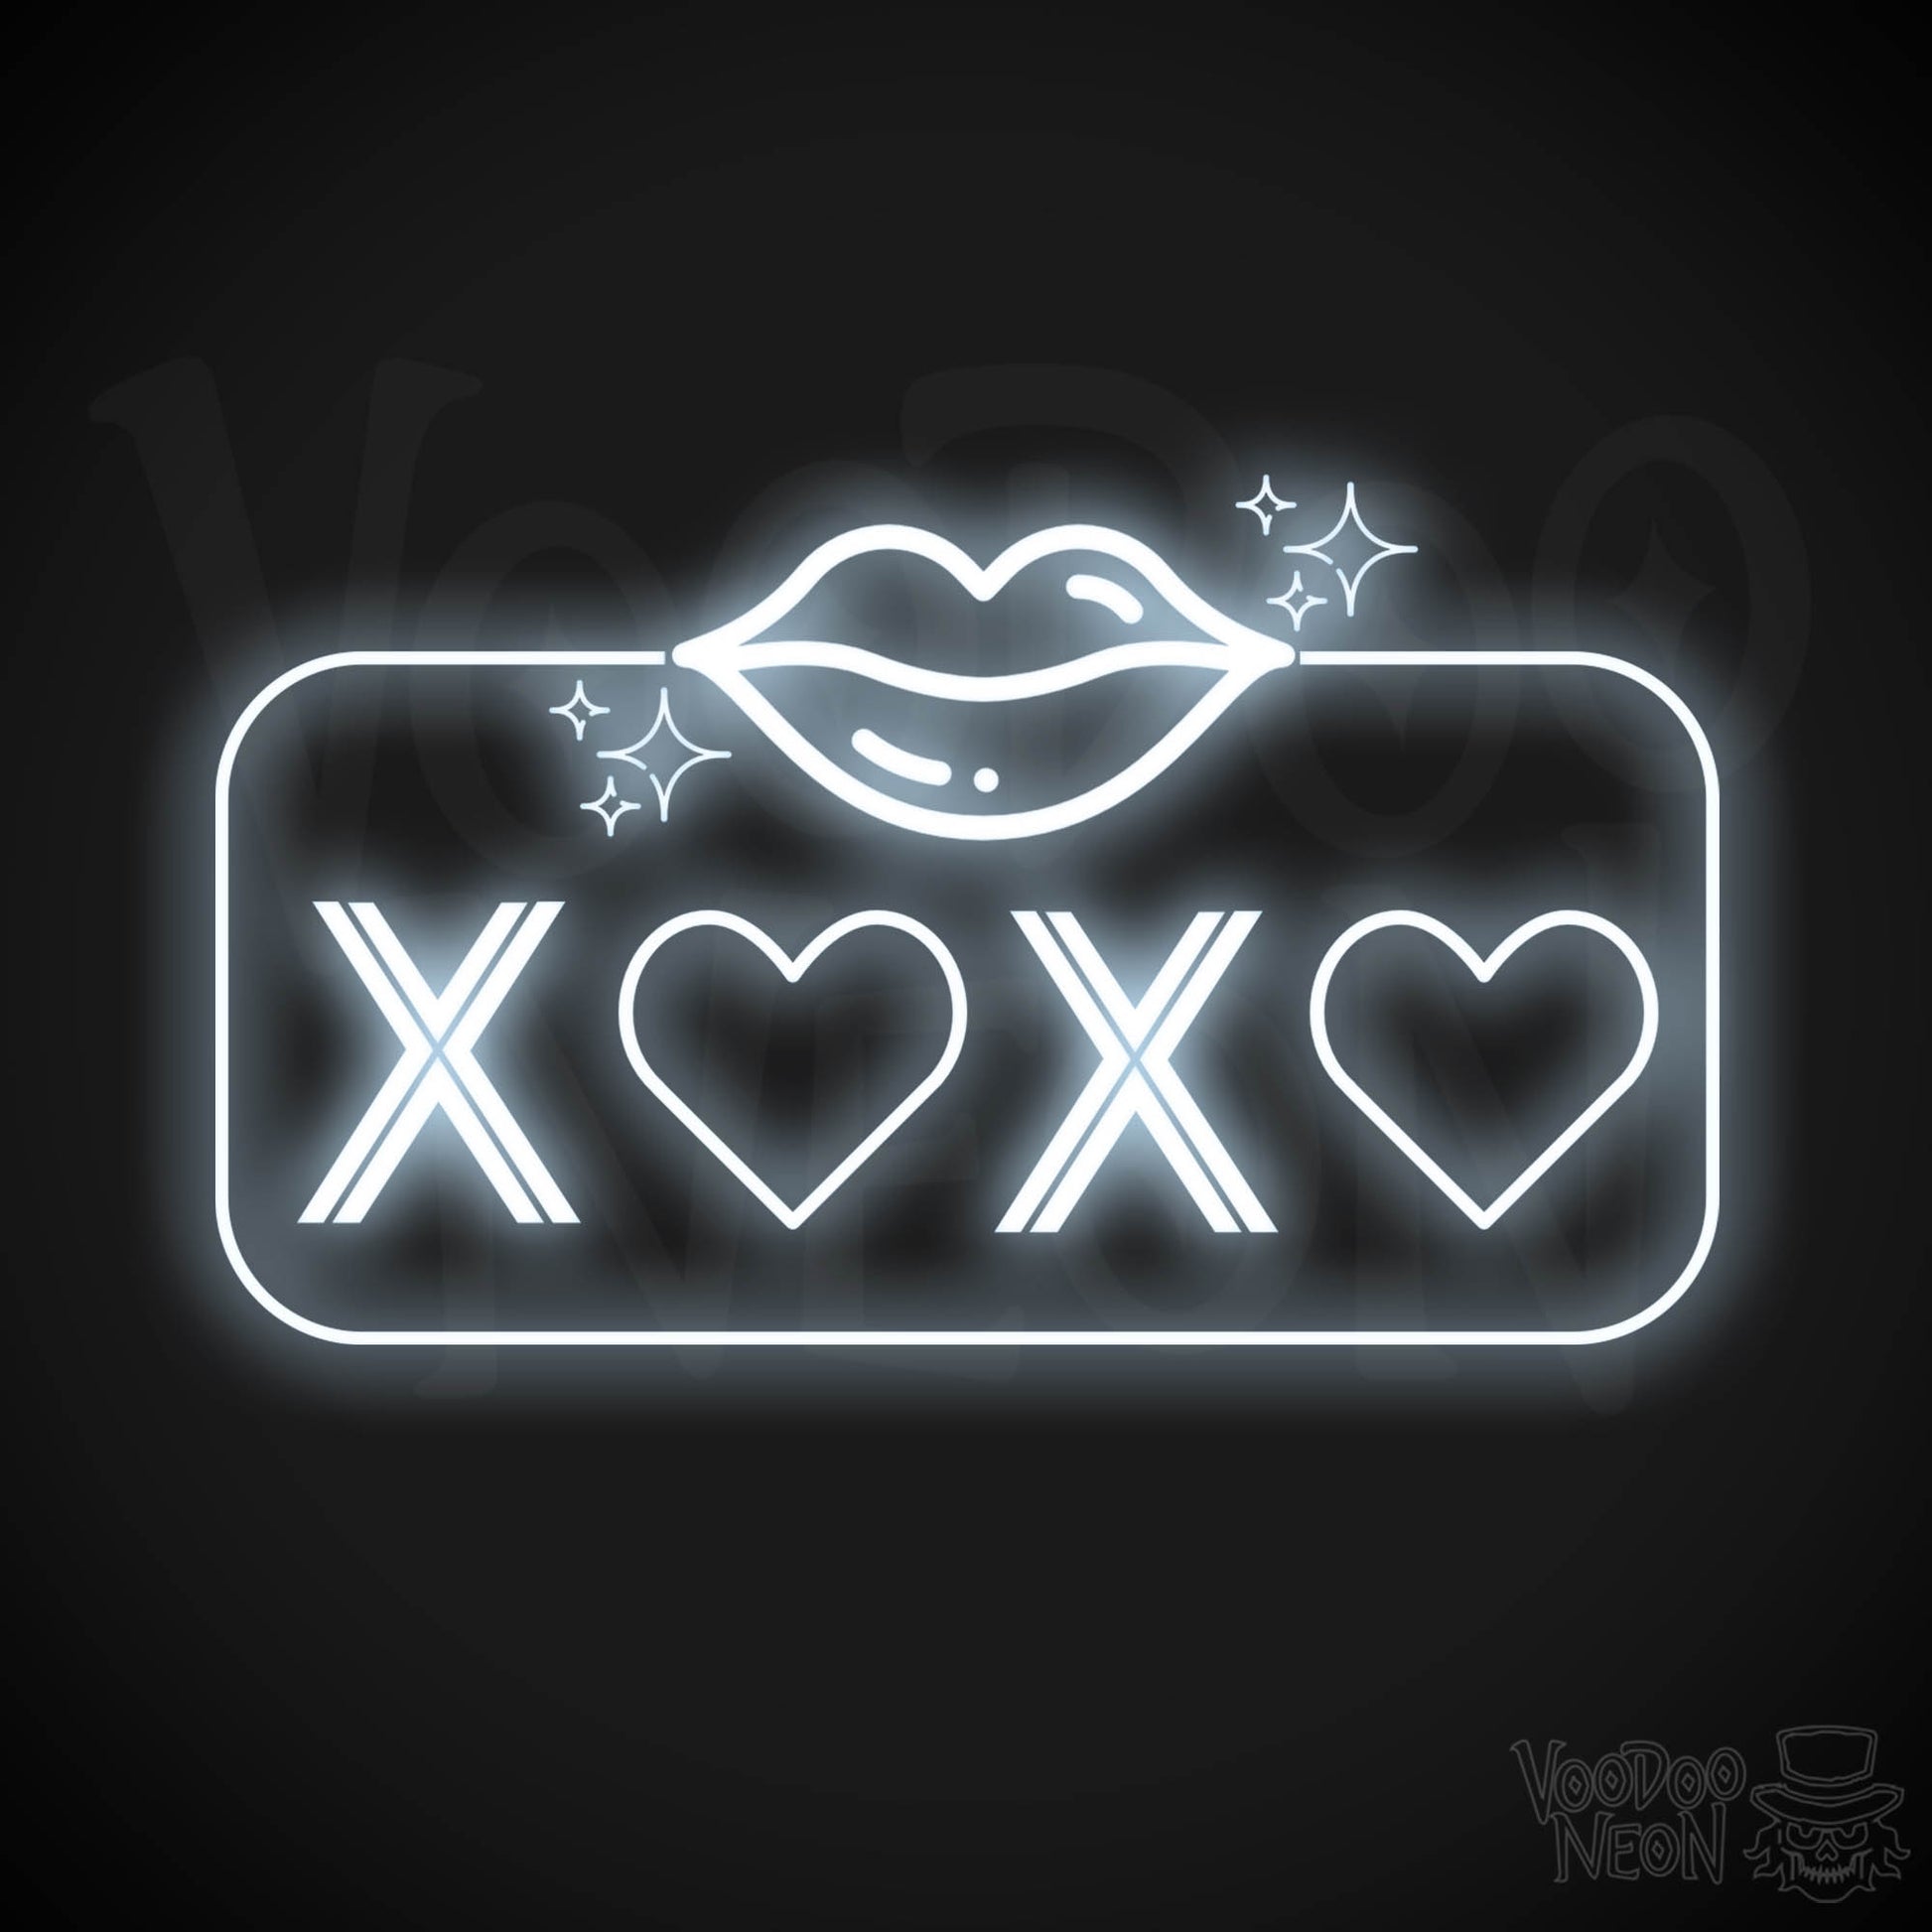 Xoxo Neon Sign - Neon XOXO - Kiss Hug Neon Wall Art - Color Cool White